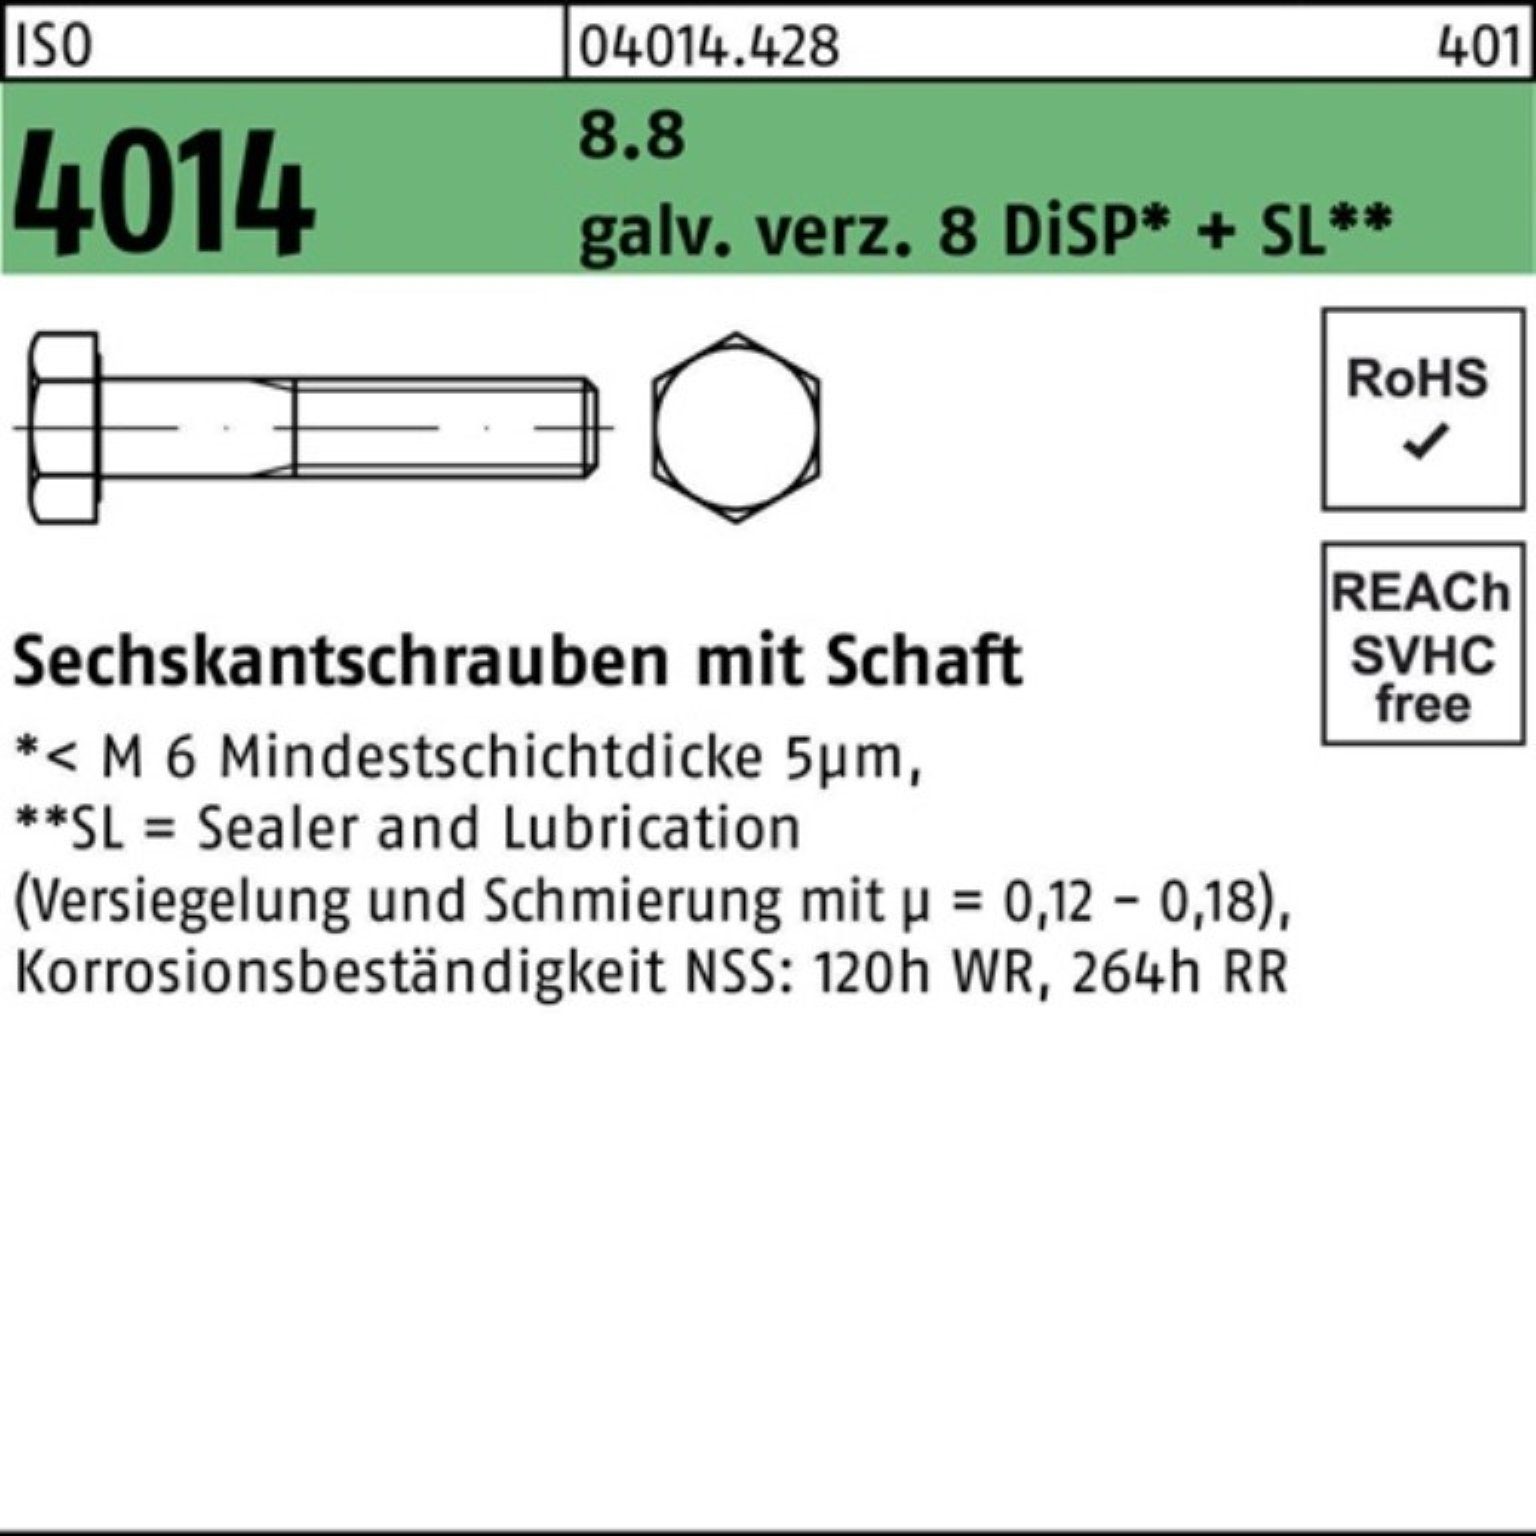 Bufab Sechskantschraube 200er Pack Sechskantschraube ISO 4014 Schaft M6x70 8.8 galv.verz. 8 Di